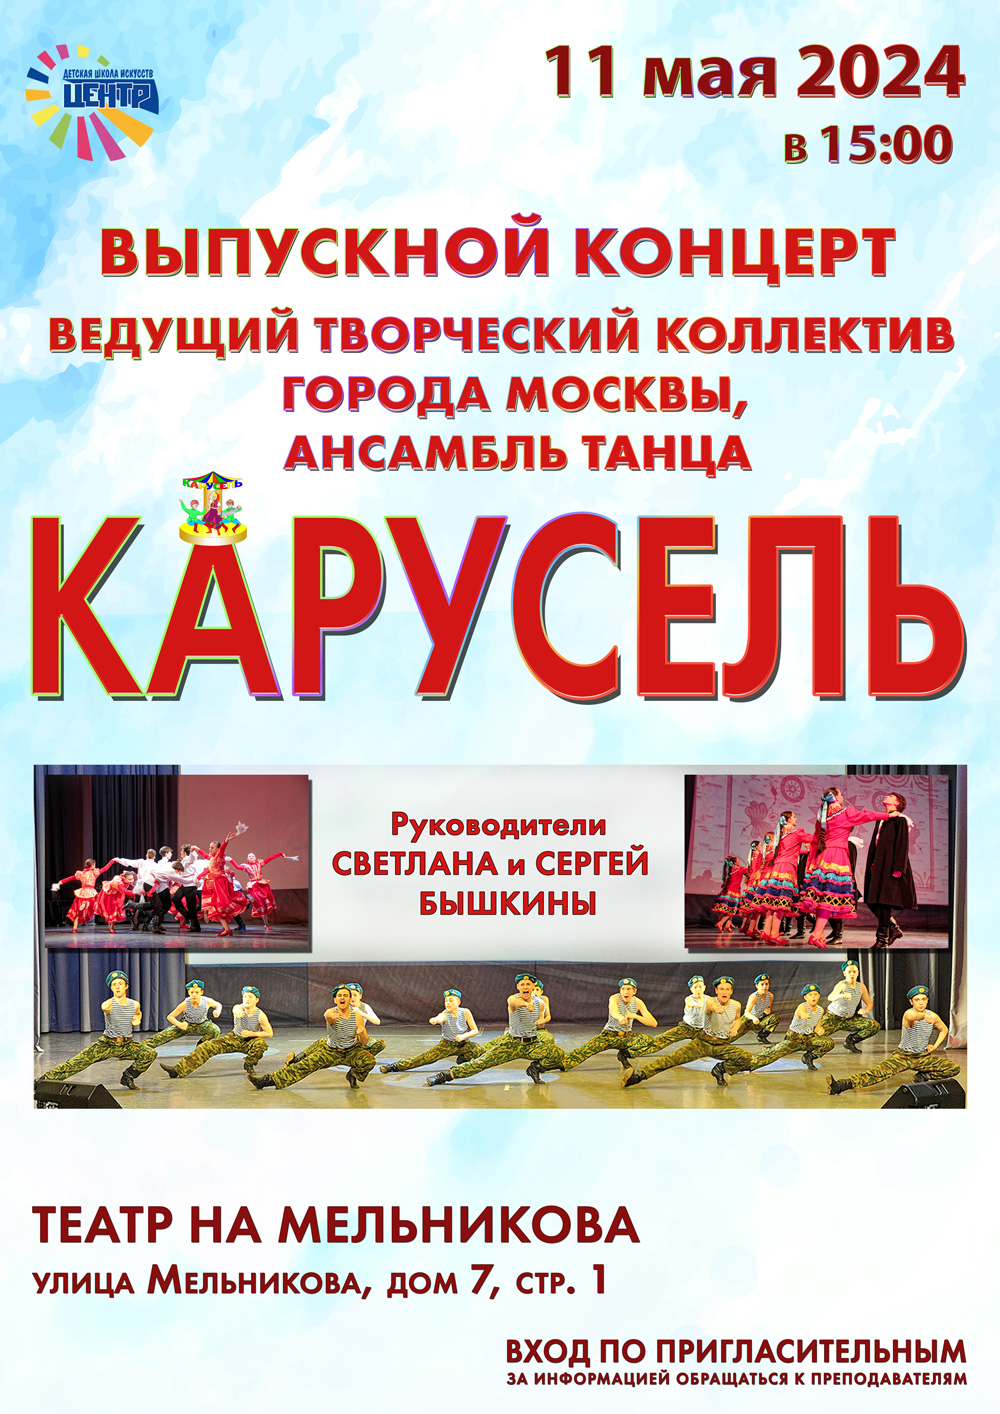 Выпускной концерт ведущего творческого коллектива г. Москвы Ансамбля танца "Карусель"